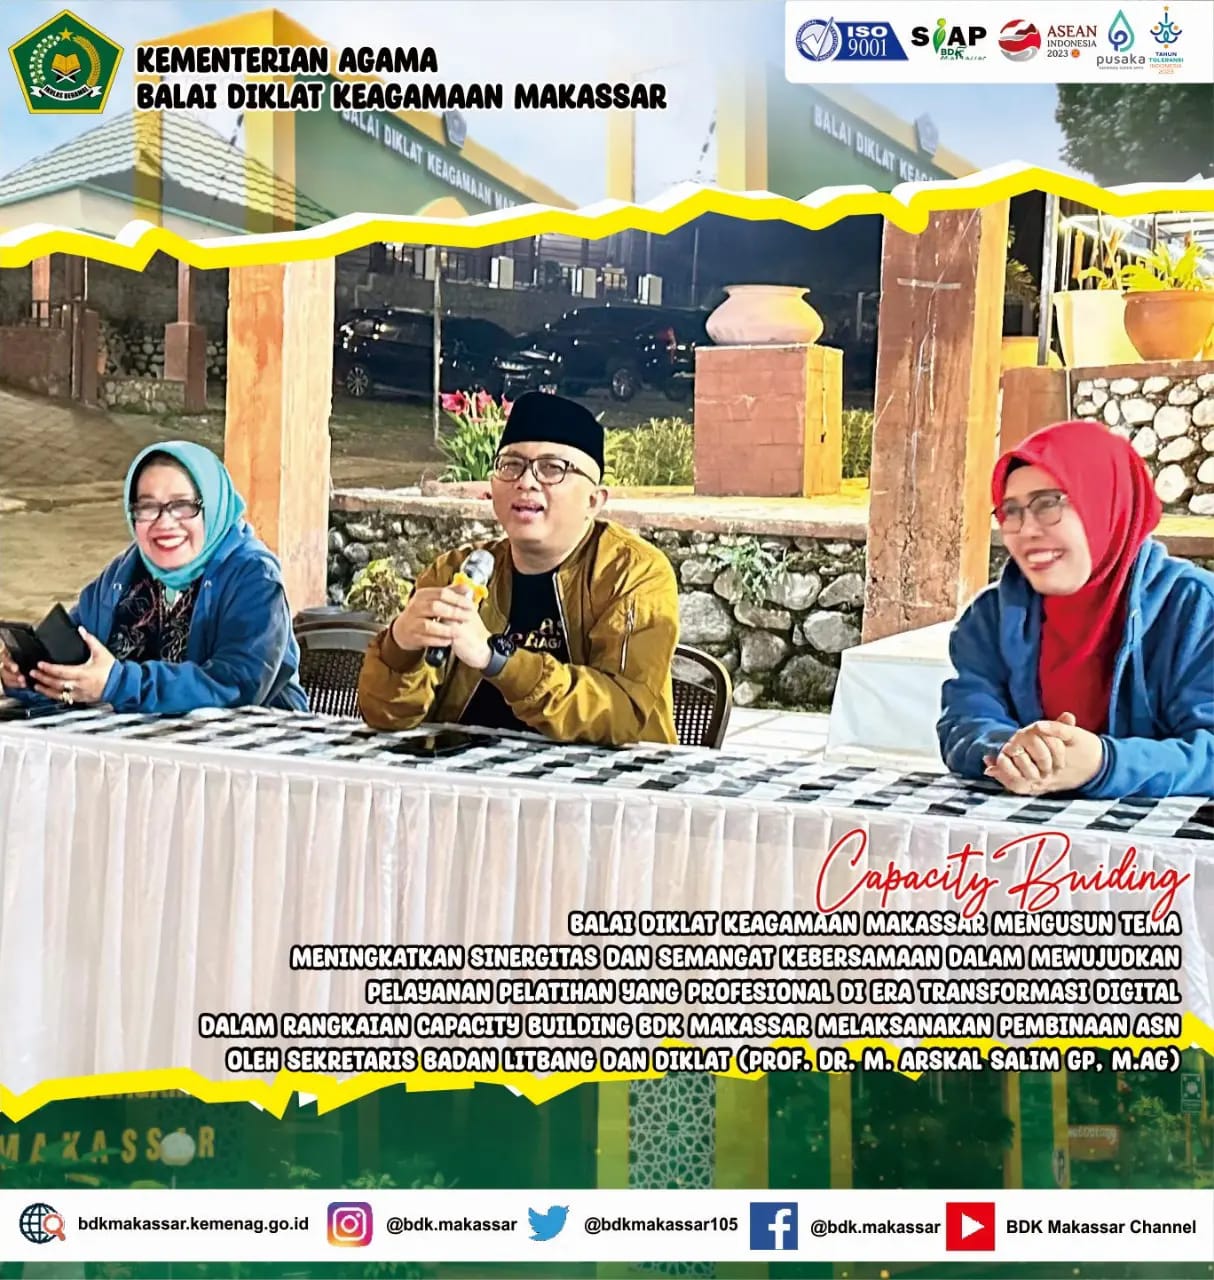 BDK Makassar gelar ICB diisi Pembinaan Pegawai oleh Sesban, Prof. Dr. H. Arskal Salim GP., M.Ag